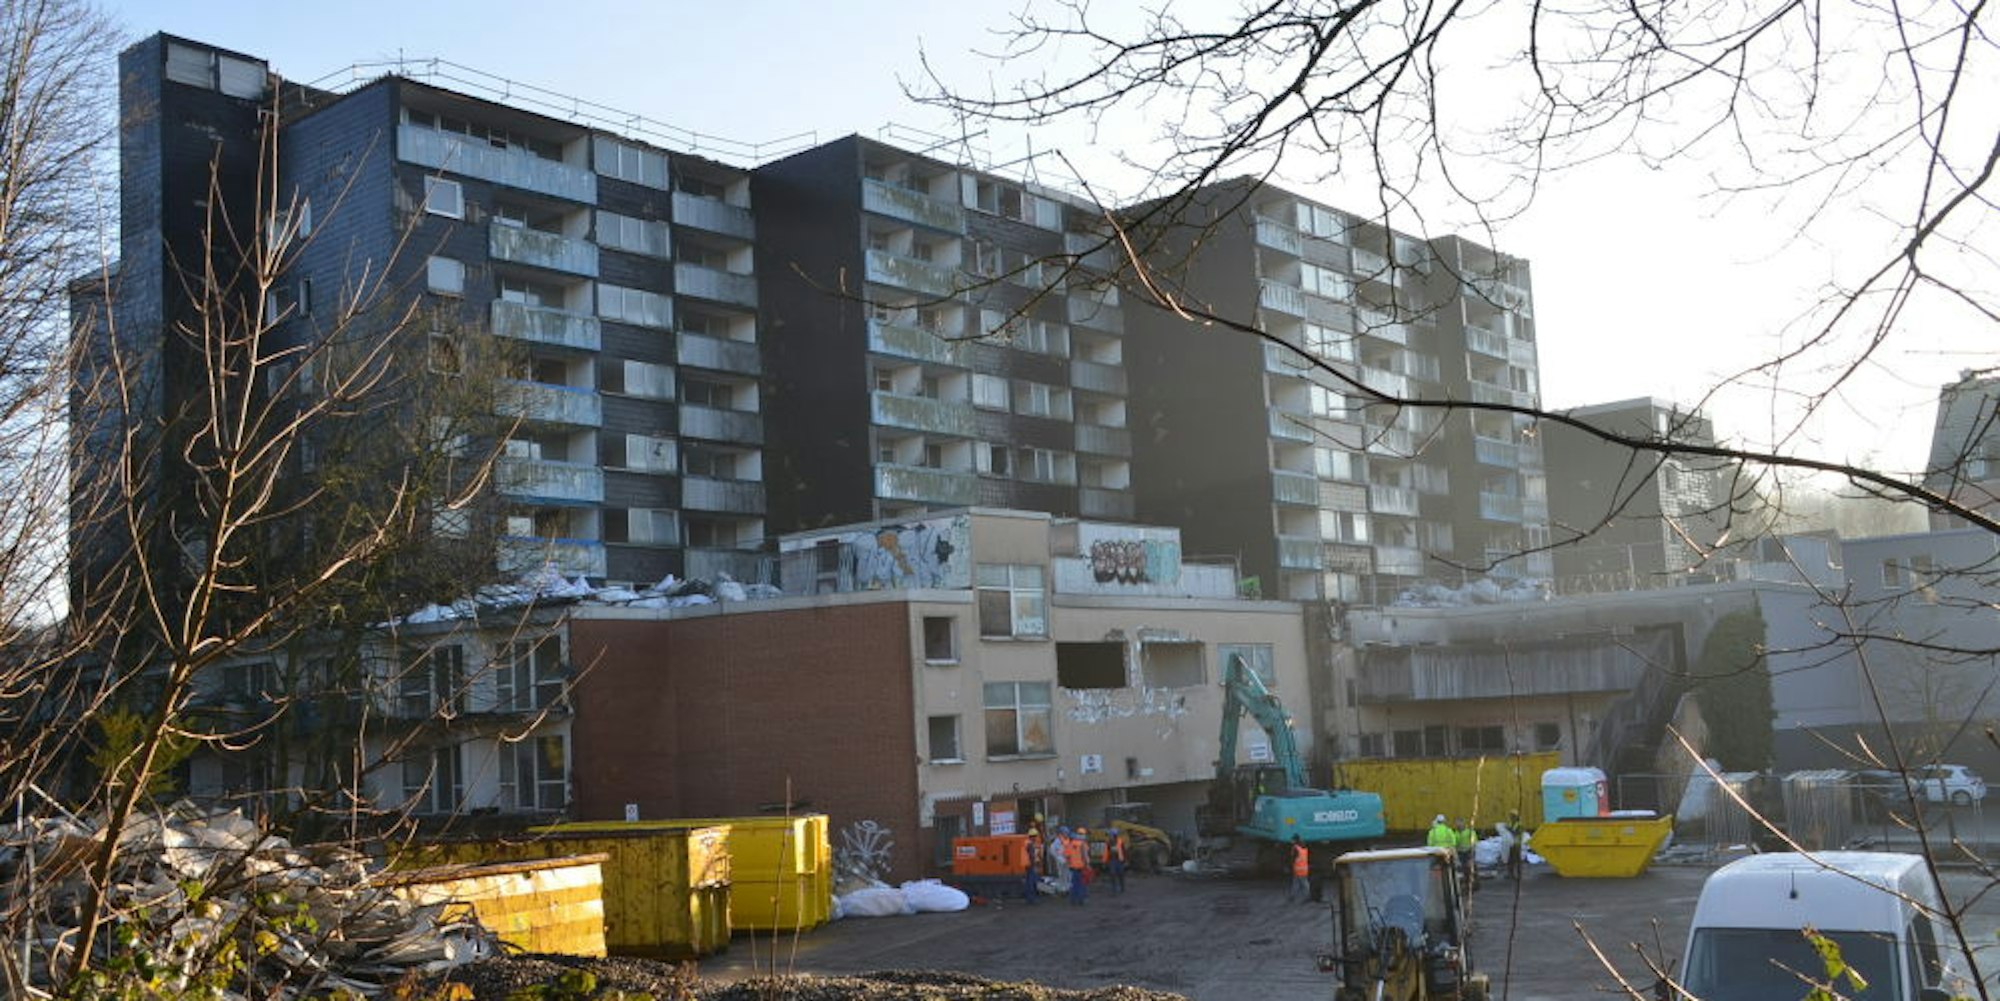 Der Abbruch des ungeliebten Merkur-Komplexes in der Waldbröler Innenstadt läuft auf Hochtouren. Die Vergabe der Abbrucharbeiten war 2019 eine der wichtigsten Entscheidungen in der Stadt.